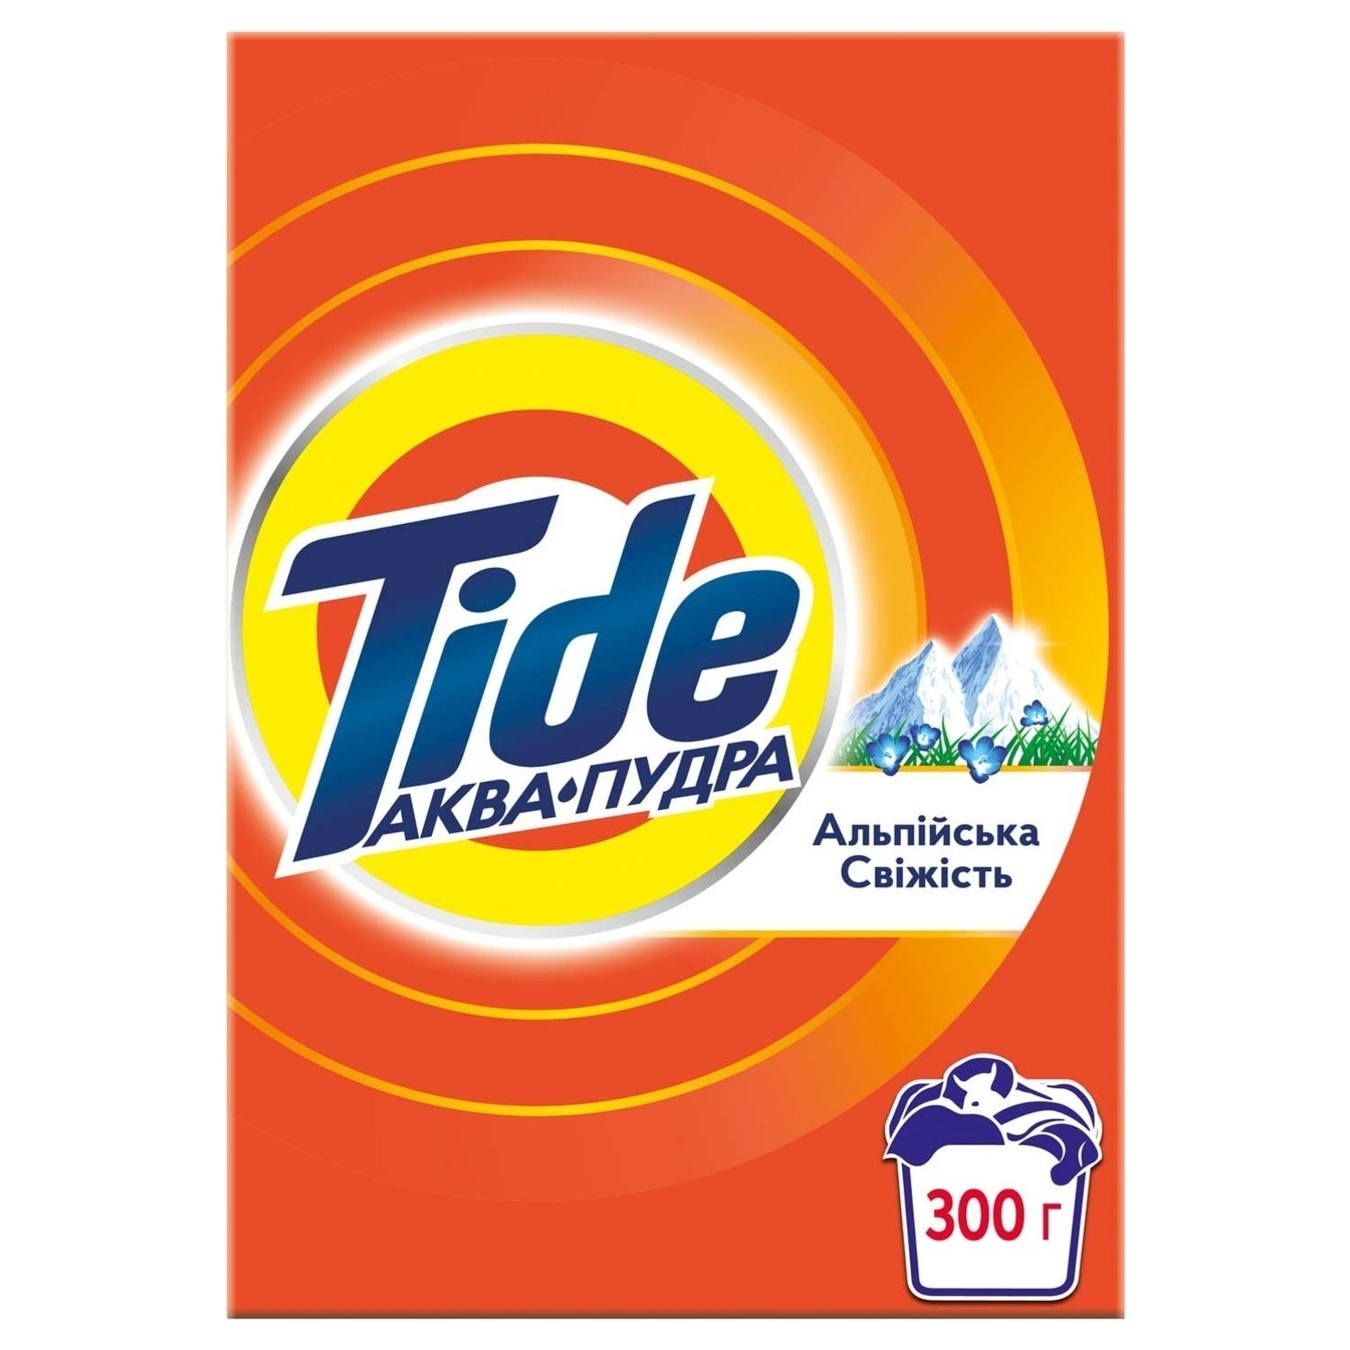 Порошок Tide Аква Пудра Альпійська cвіжість для ручного прання 300г